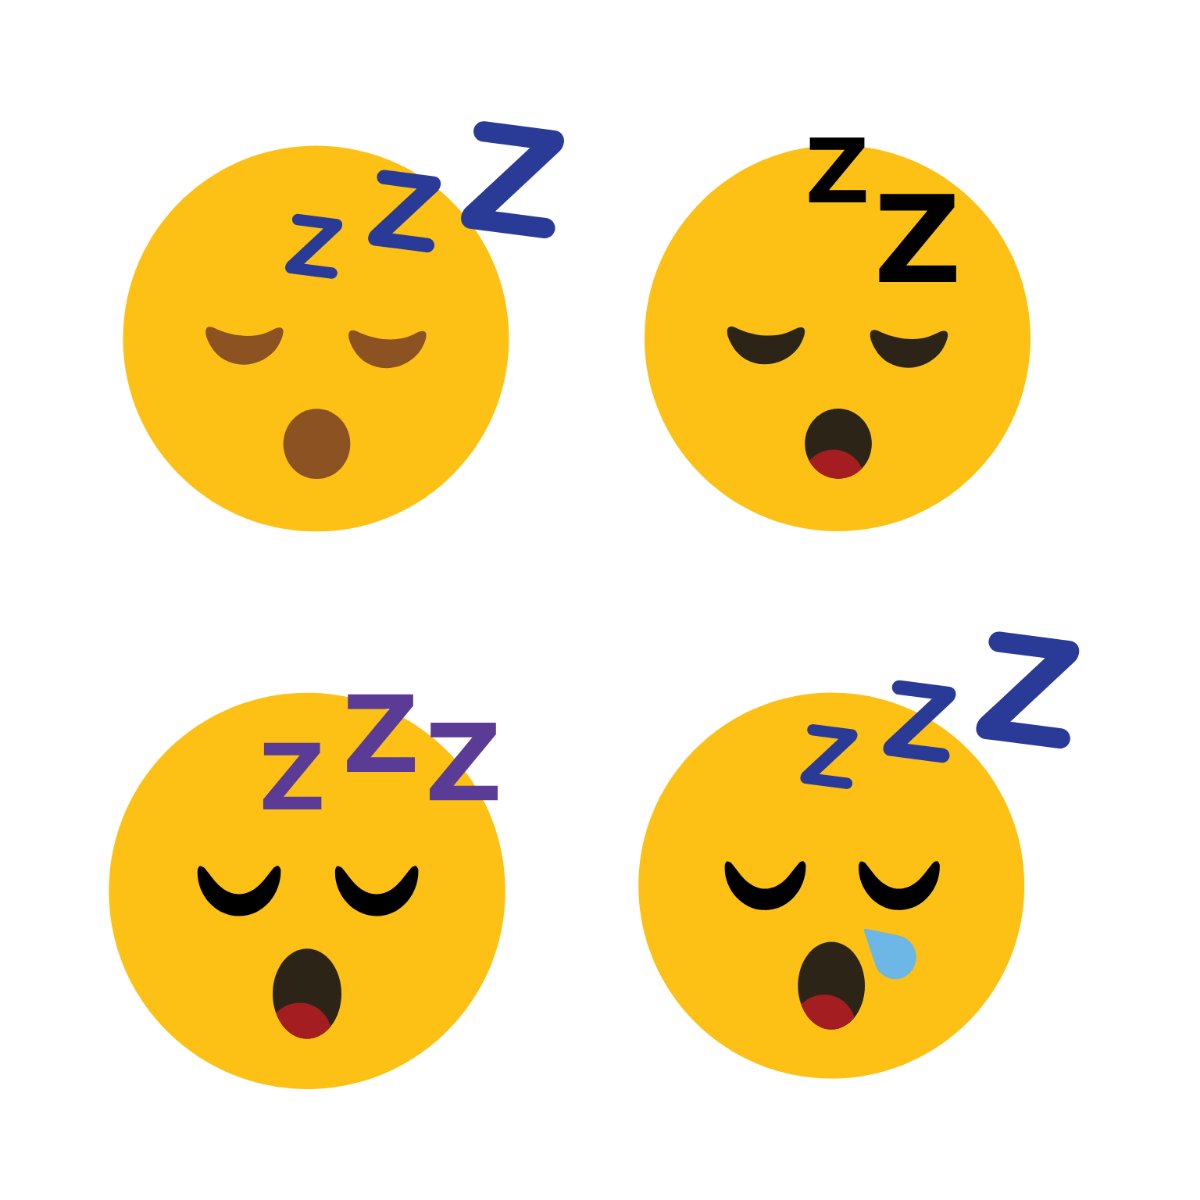 Free Sleepy Emoji Vector Template